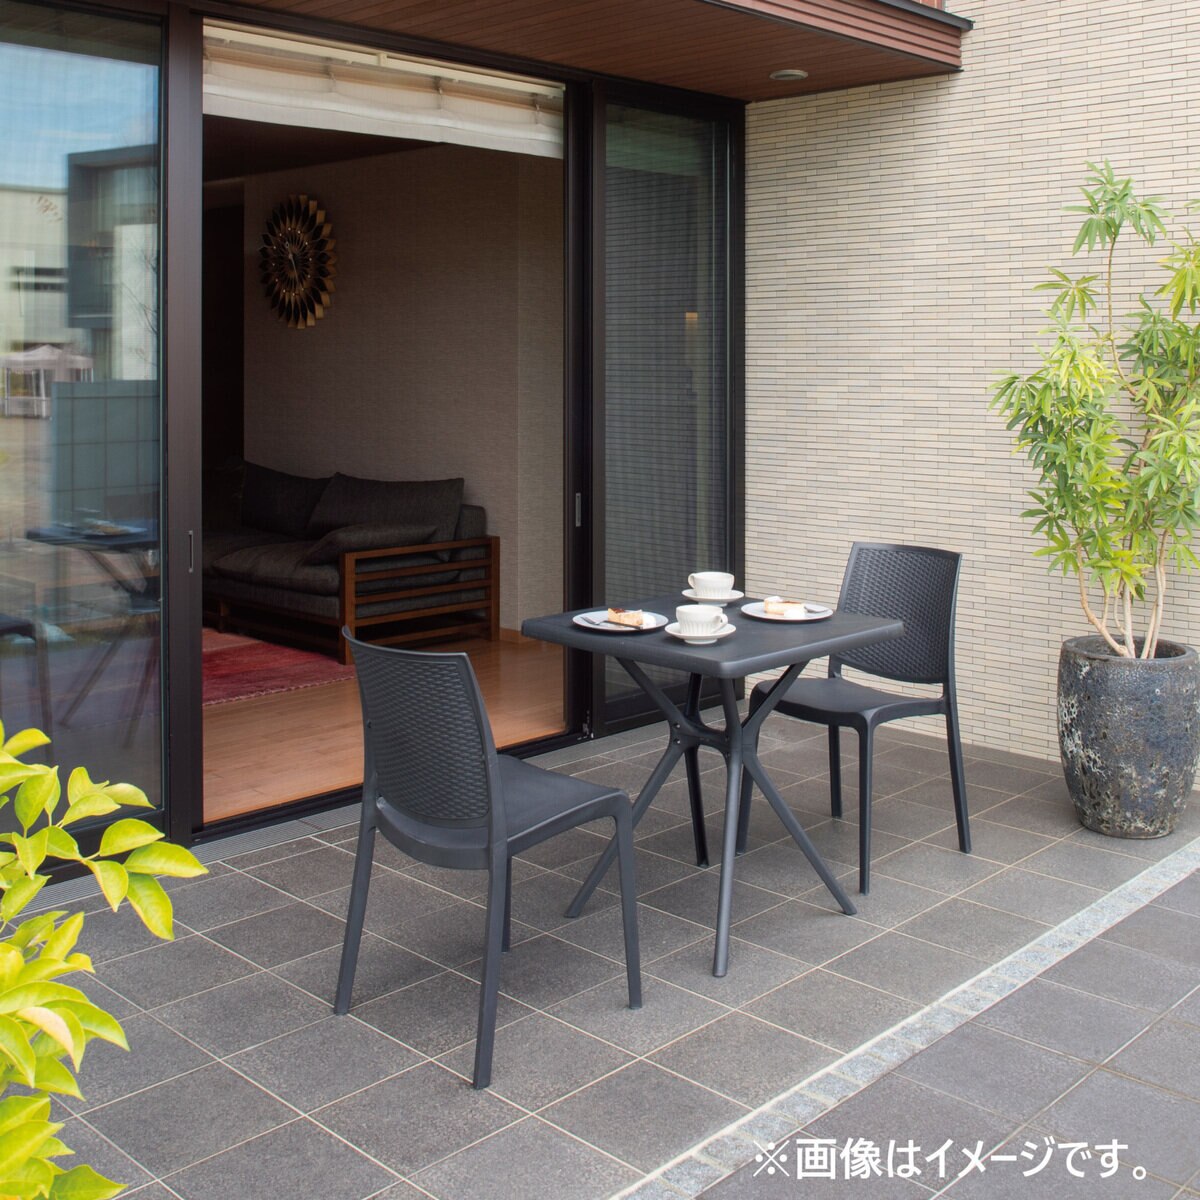 タカショー ガーデンテーブル スクエアテーブル Bosco チャコールグレー 【